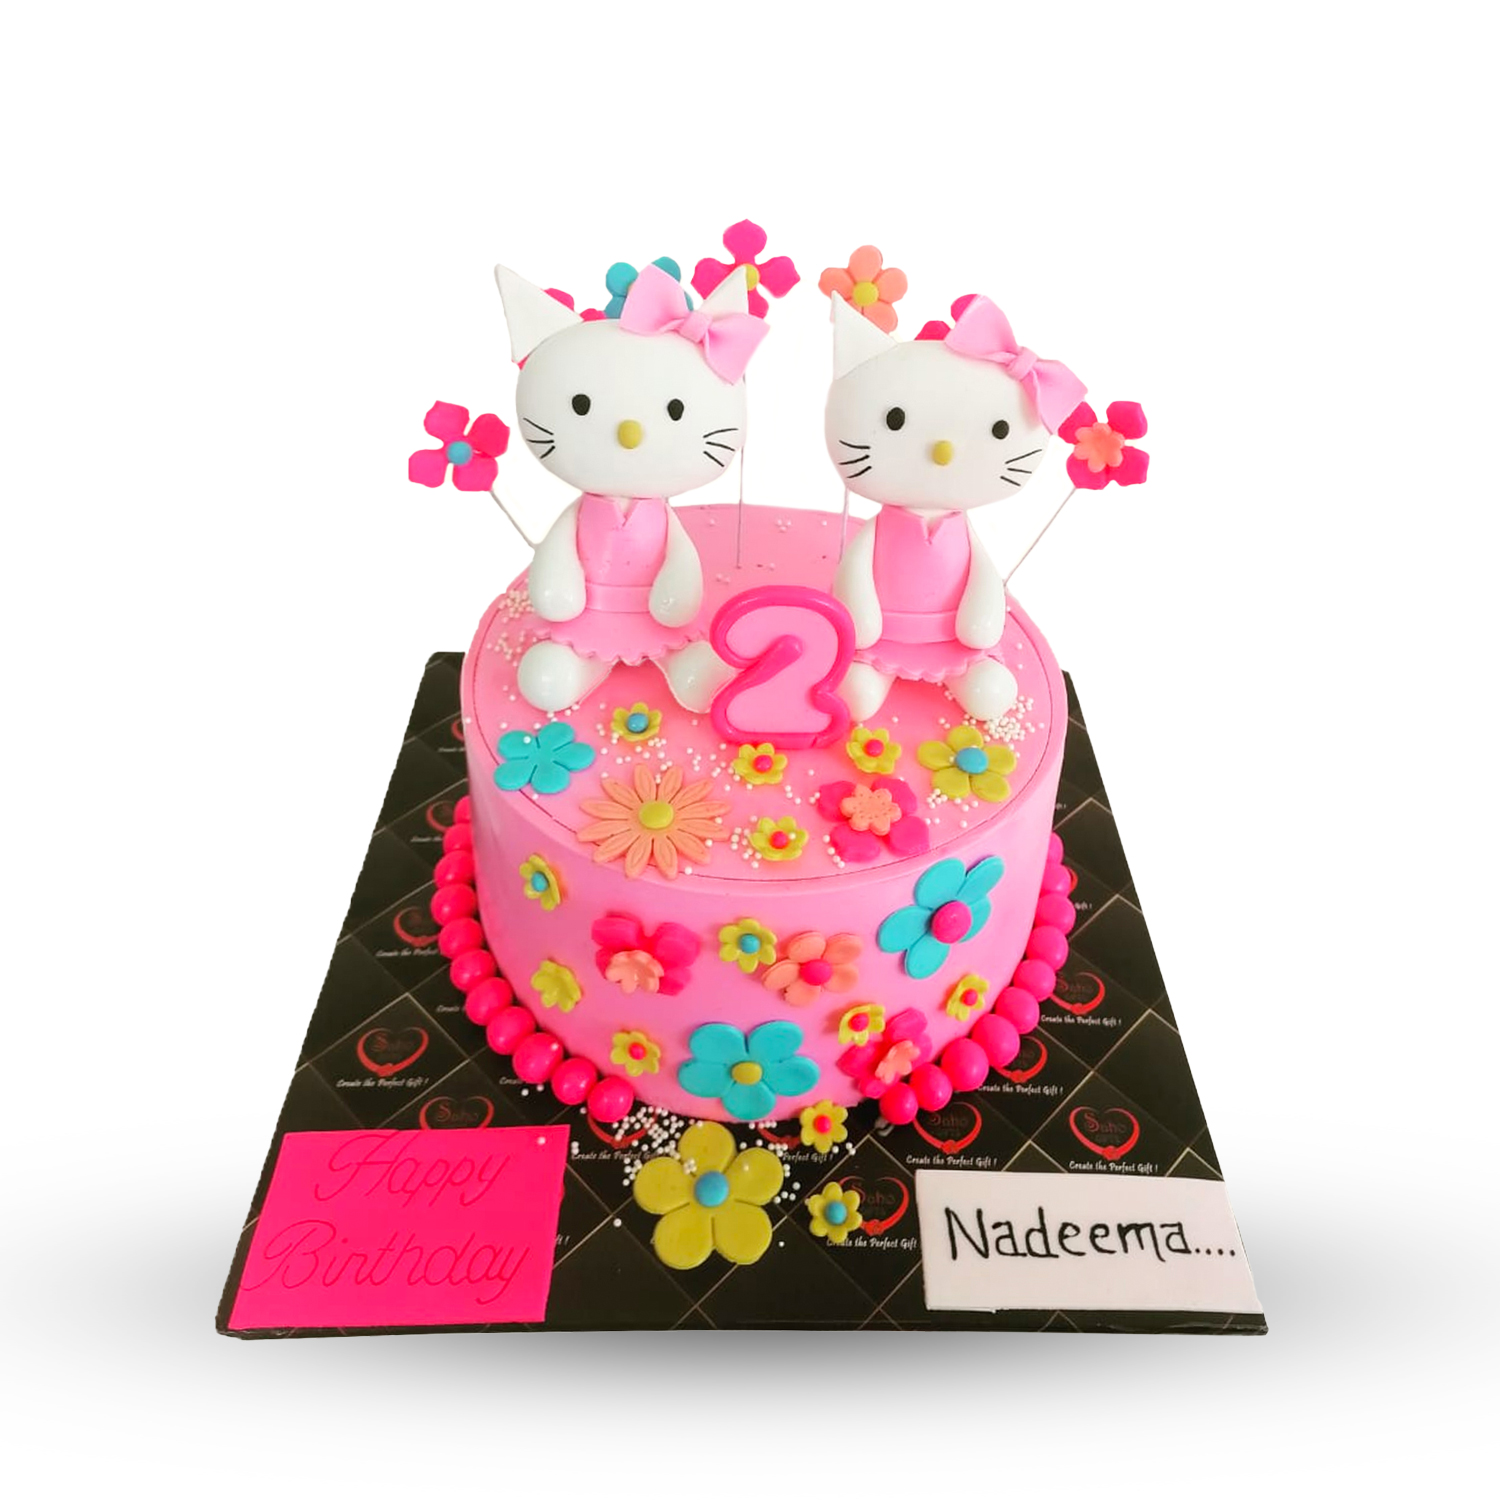 How to Make a Hello Kitty Birthday Cake - Wilton